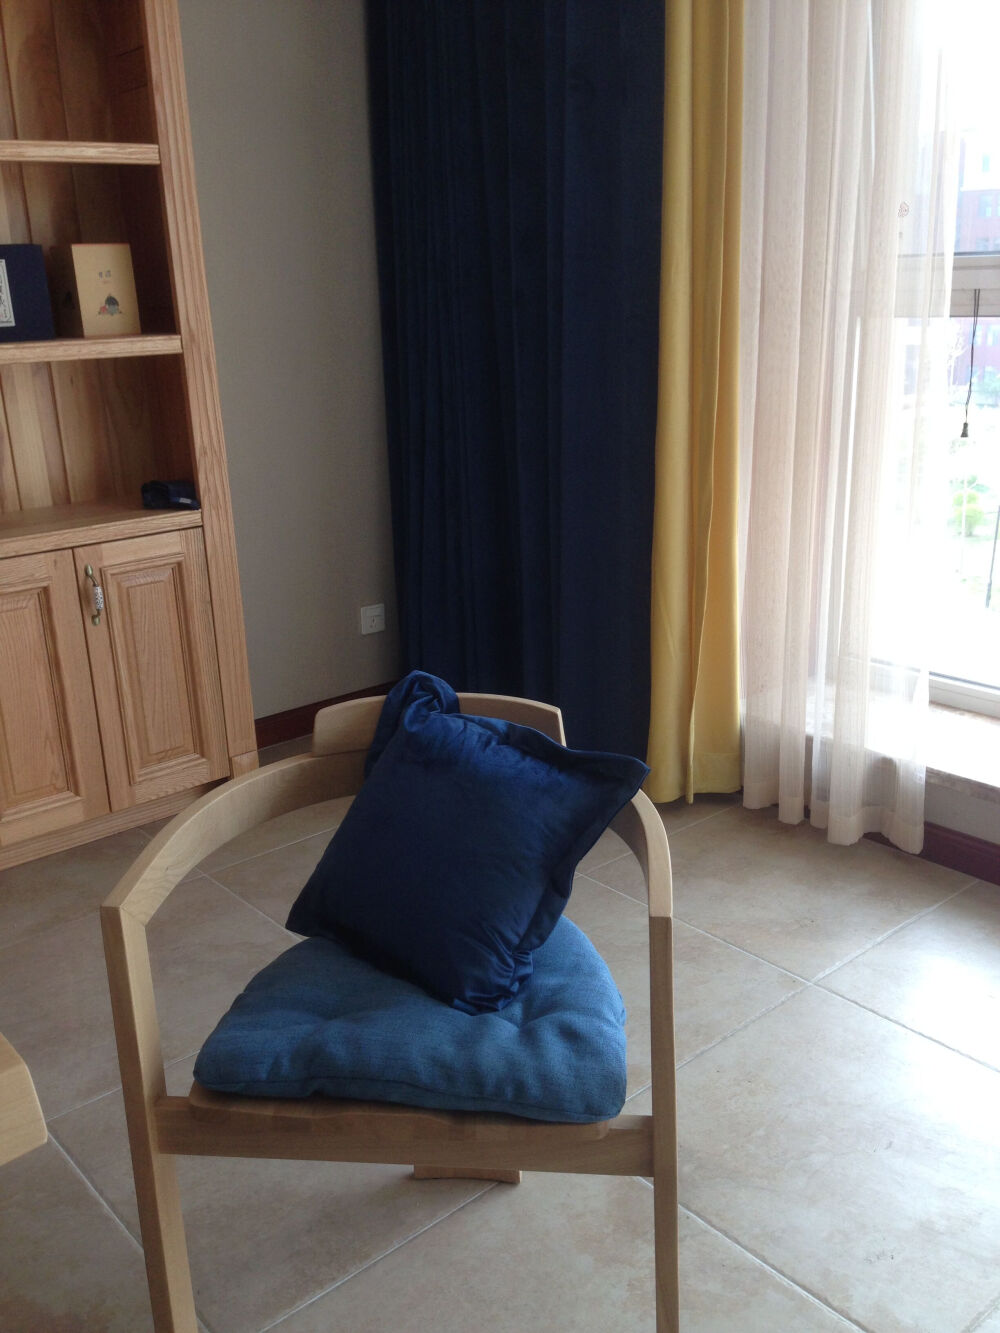 4.11，我们定的椅垫、靠垫送过来了。当时设计师说，客厅要有一些相同颜色的元素和蓝色窗帘相呼应。等铺好了再拍拍效果。